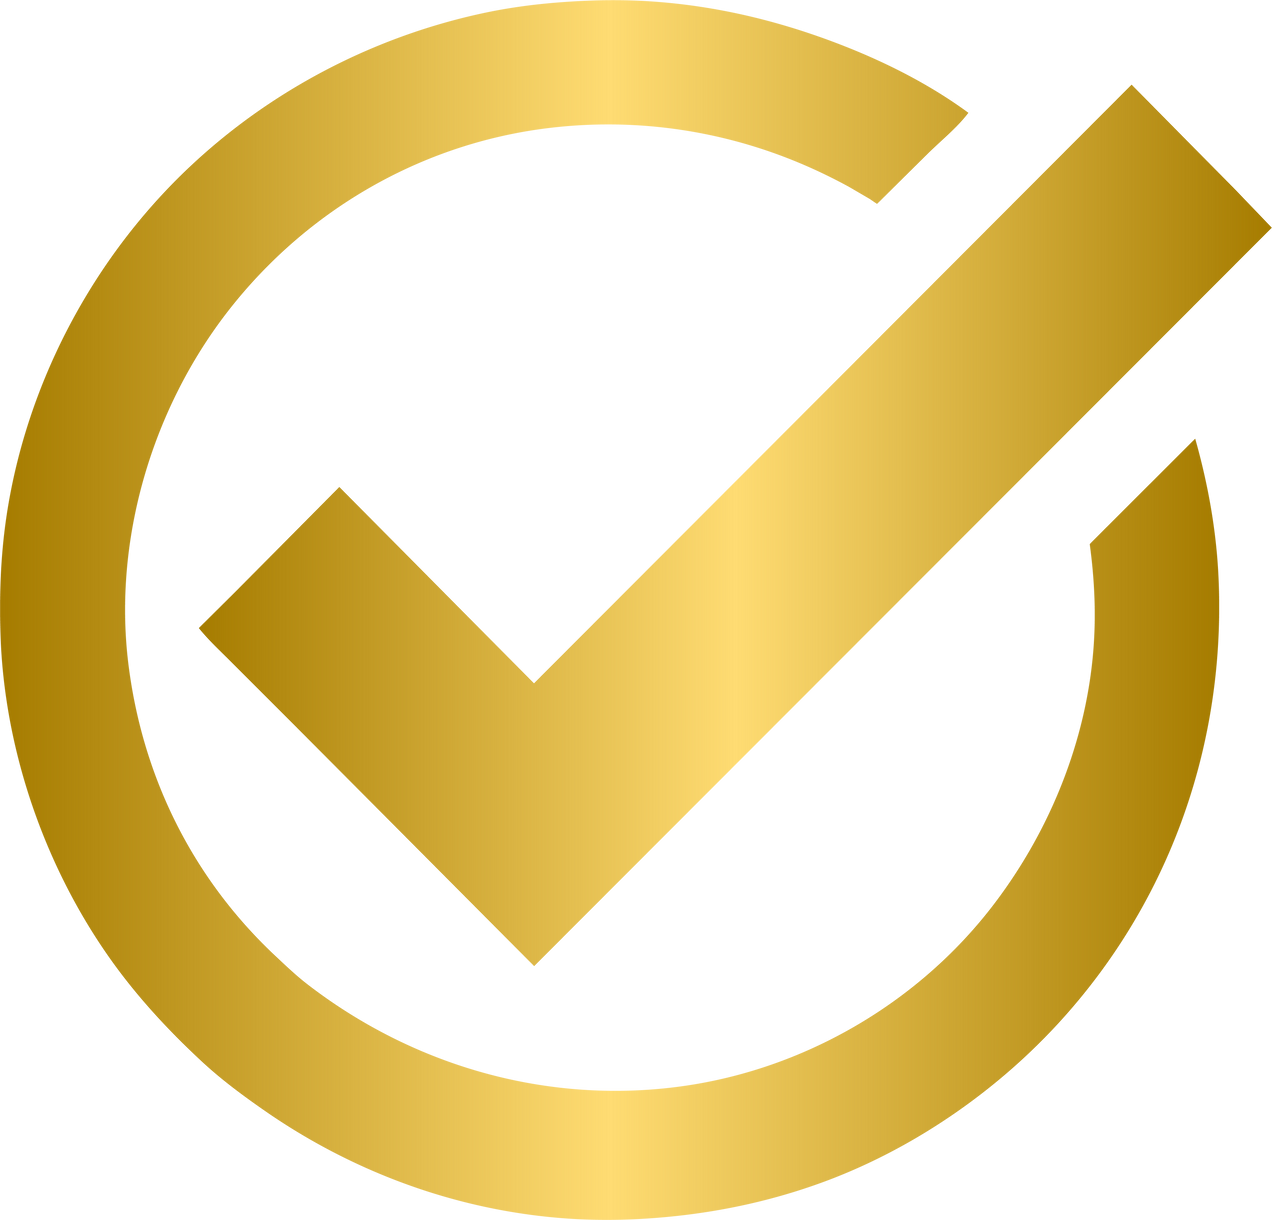 Gold check mark icon